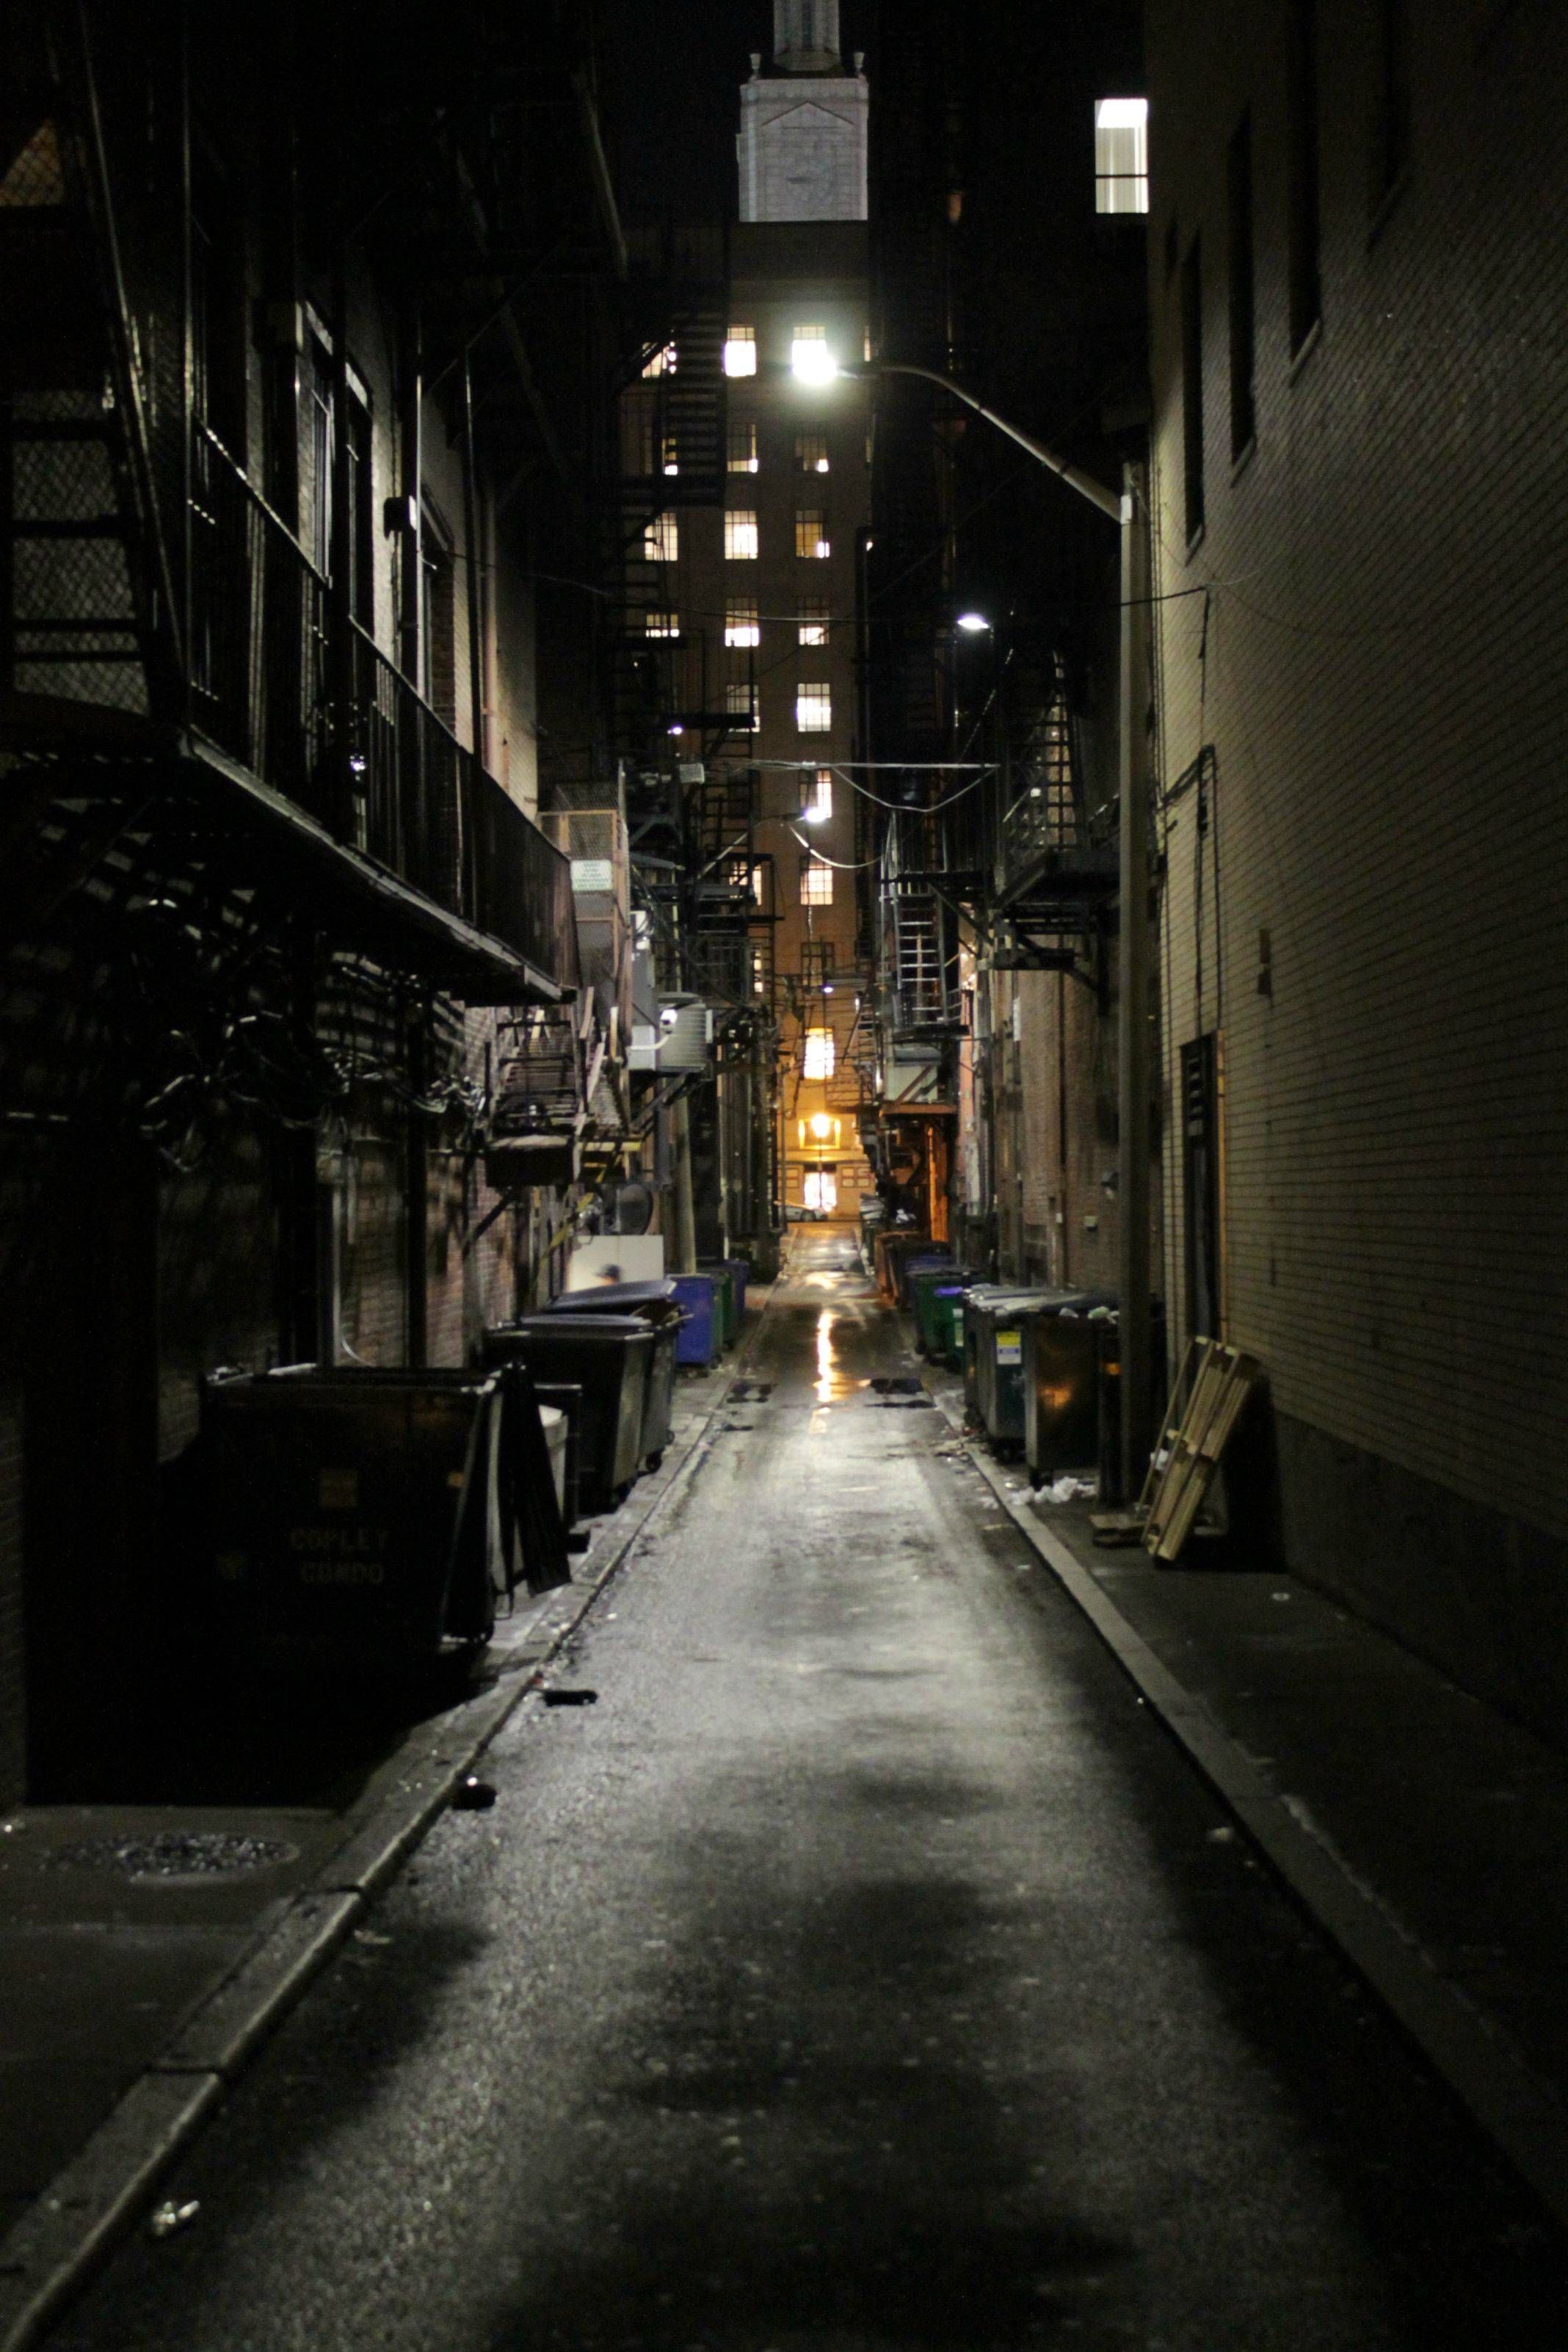 One of the best picture I've taken. Dark city, City aesthetic, Dark alleyway